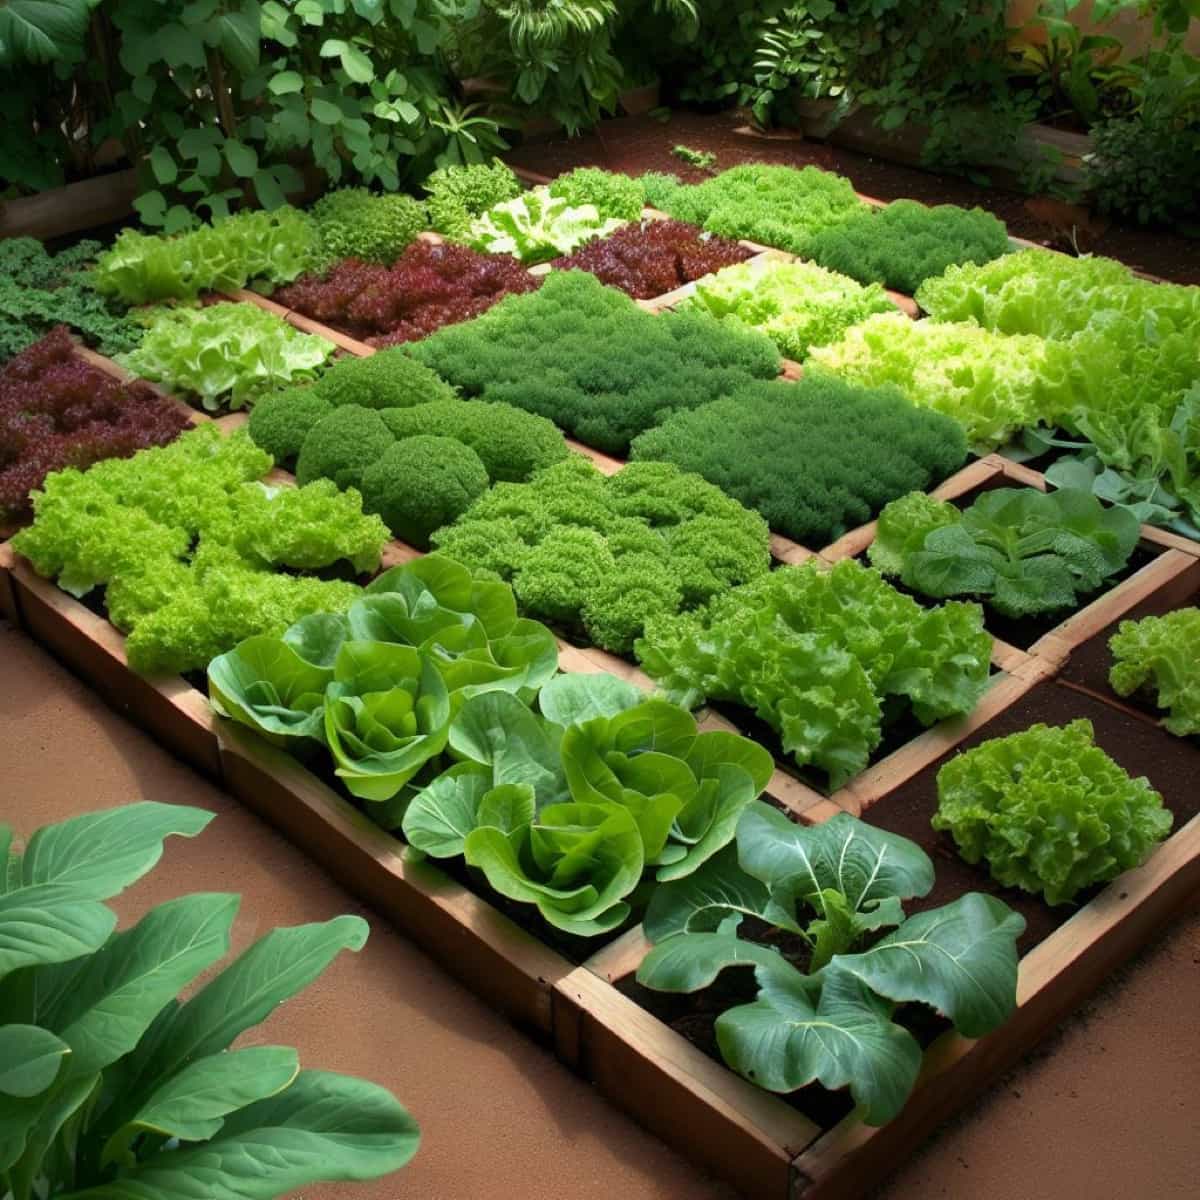 Salad gardening